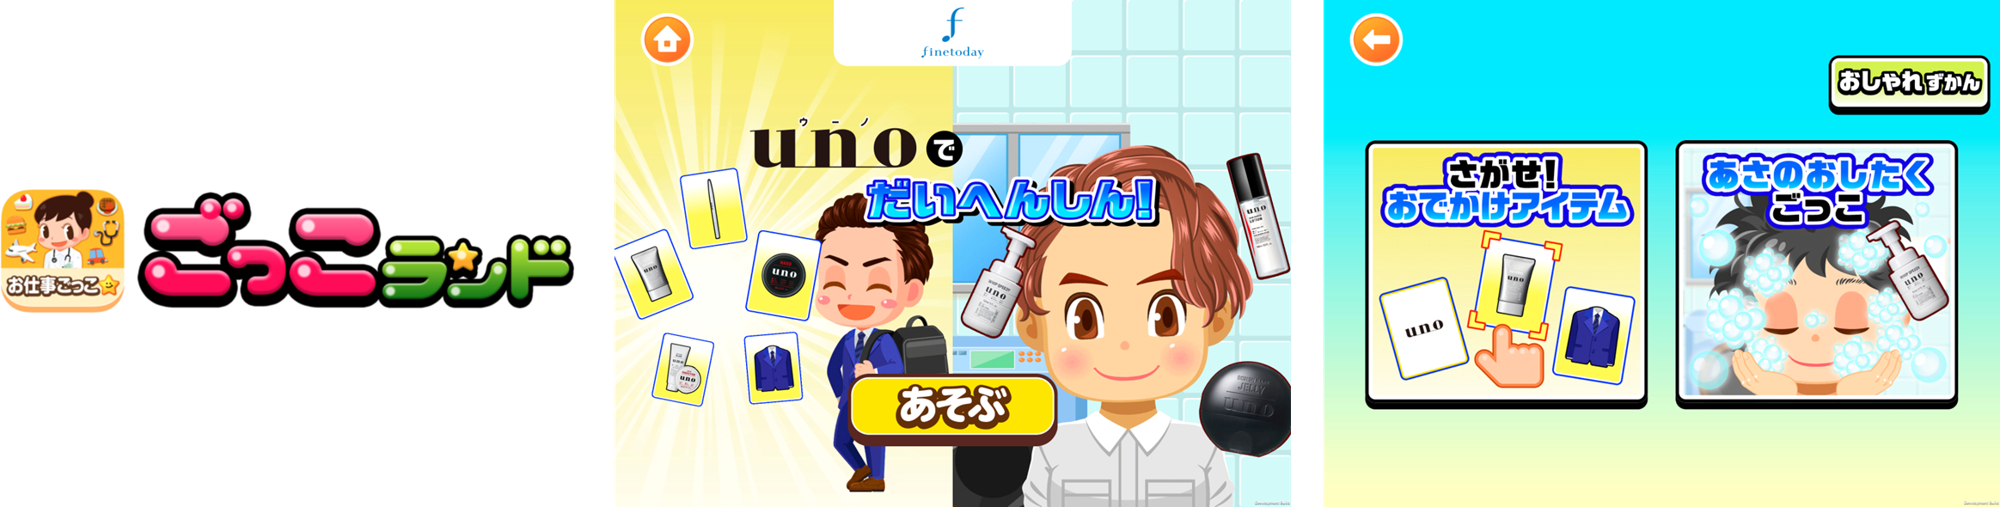 ファイントゥデイ資生堂、子ども向け社会体験アプリ「ごっこランド」に新ゲーム「uno（ウーノ）でだいへんしん！」を7月1日(金)より公開